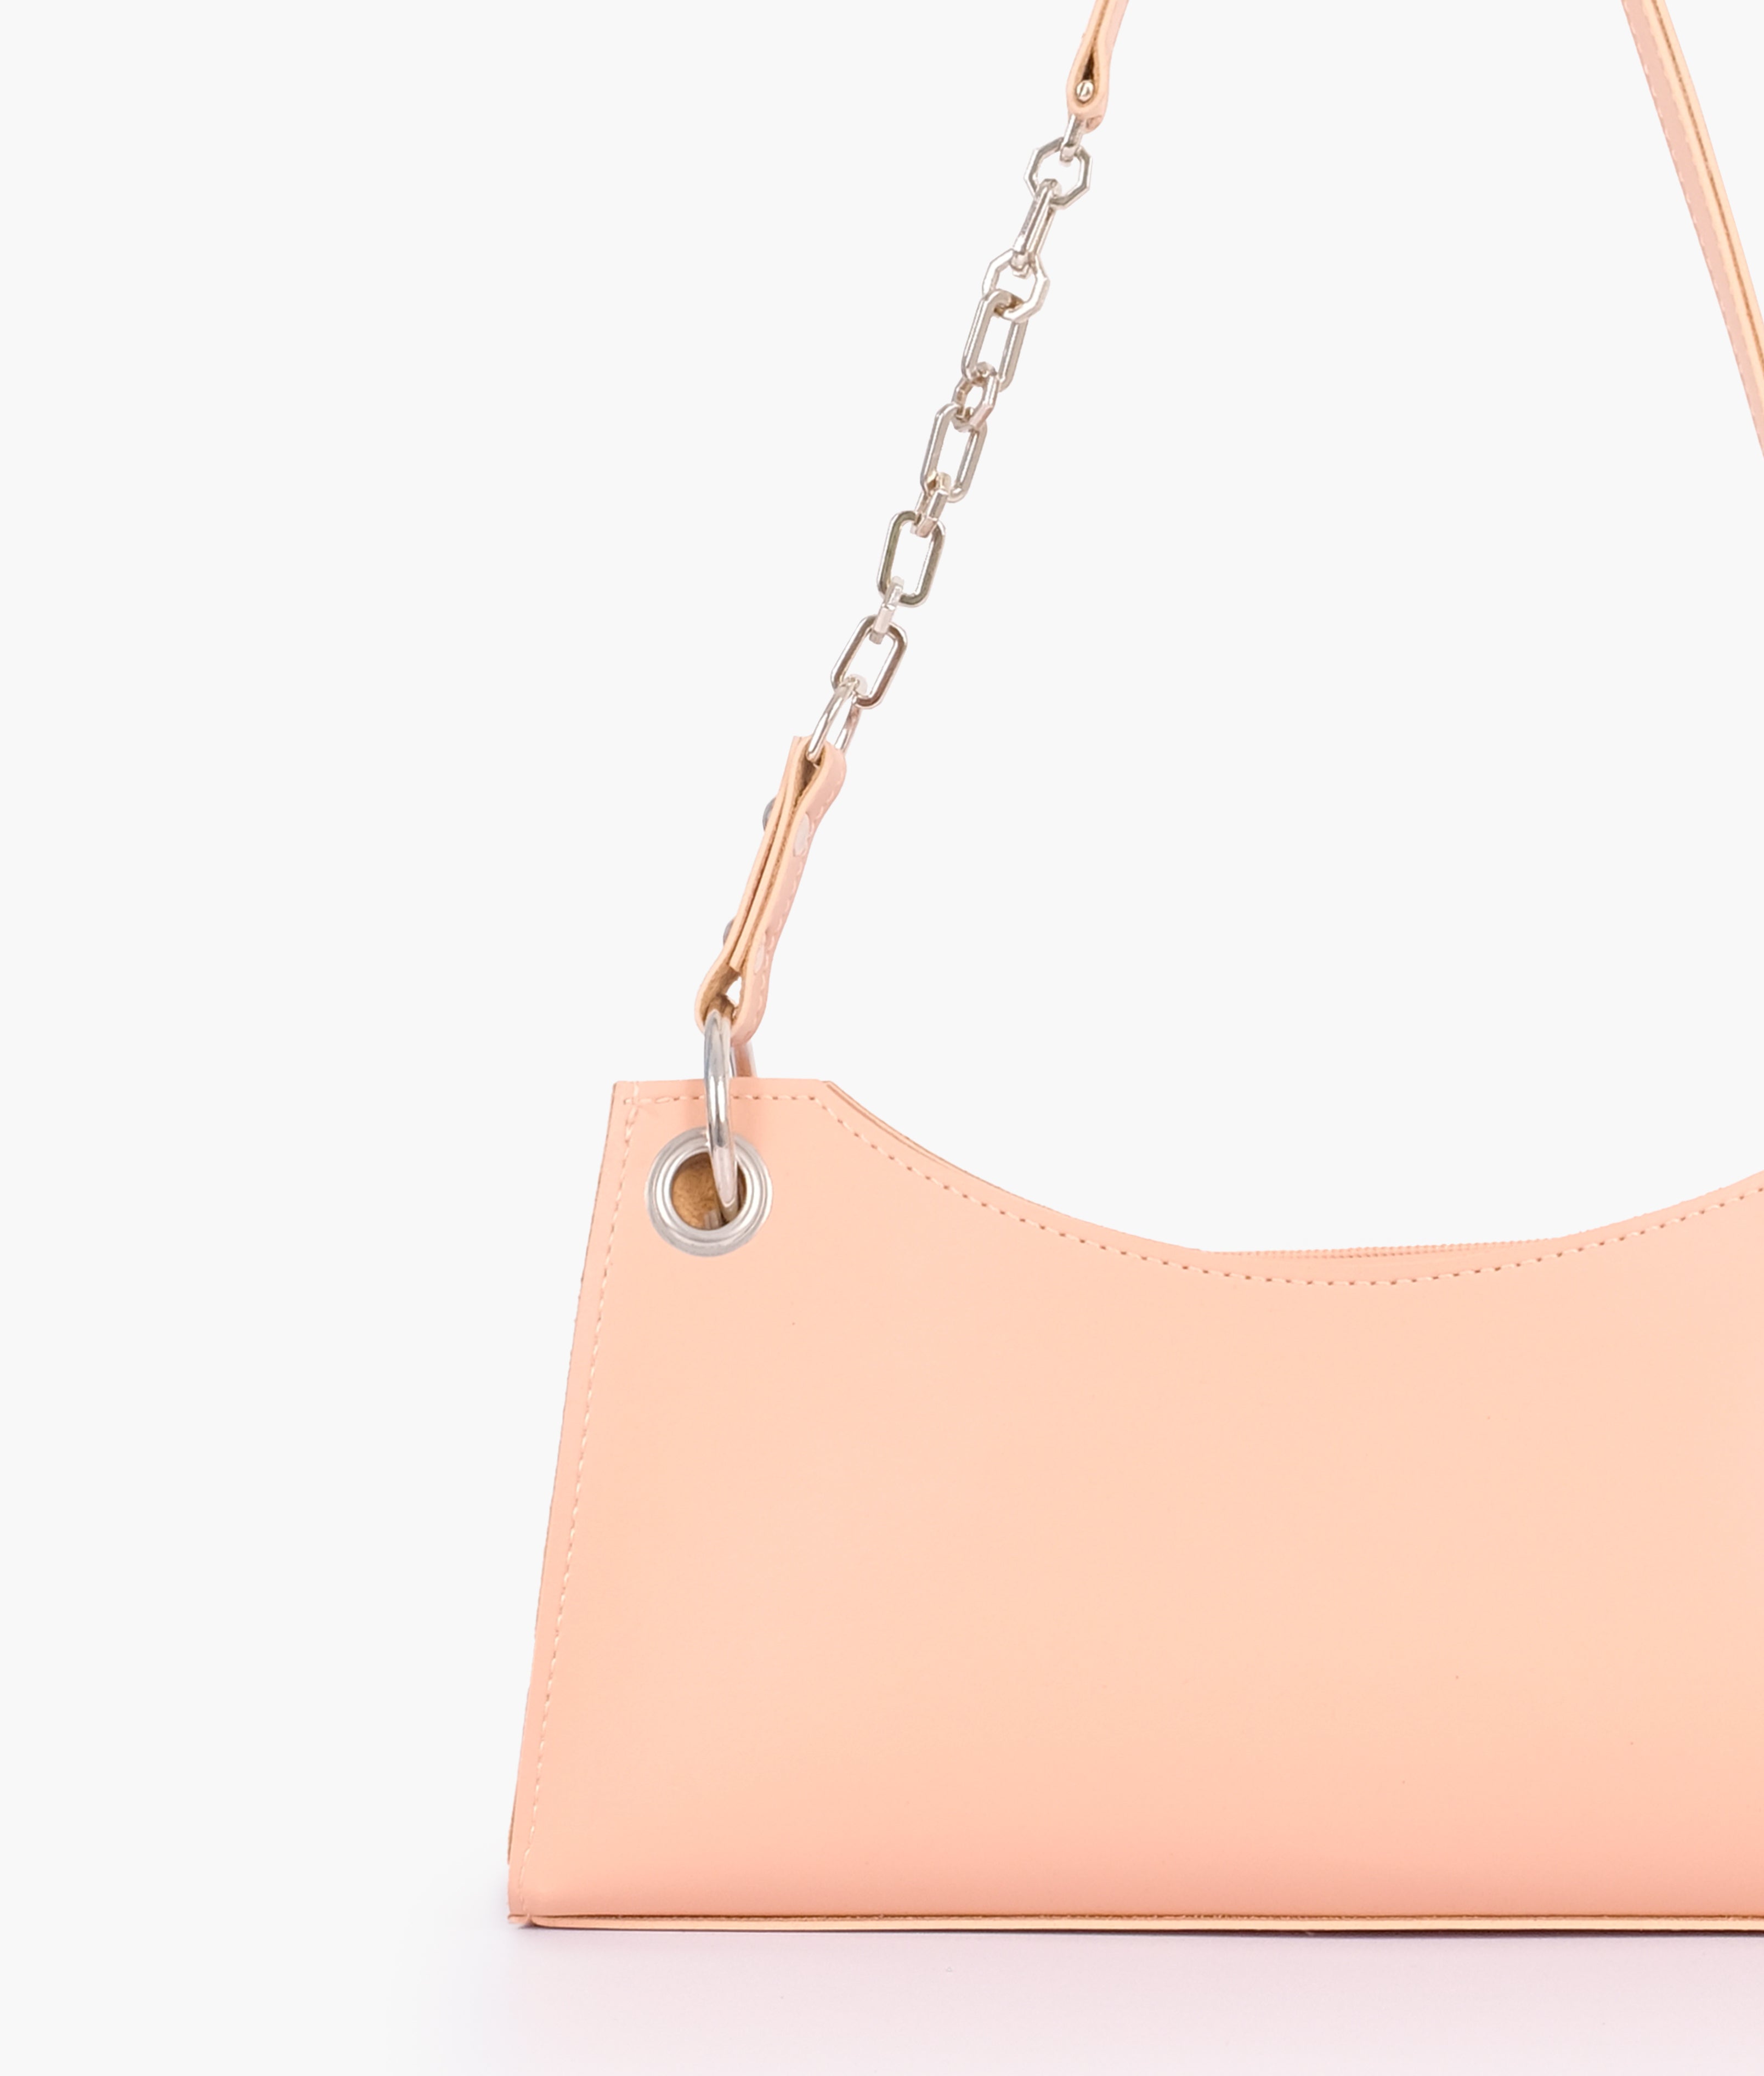 Peach elongated chain handle purse